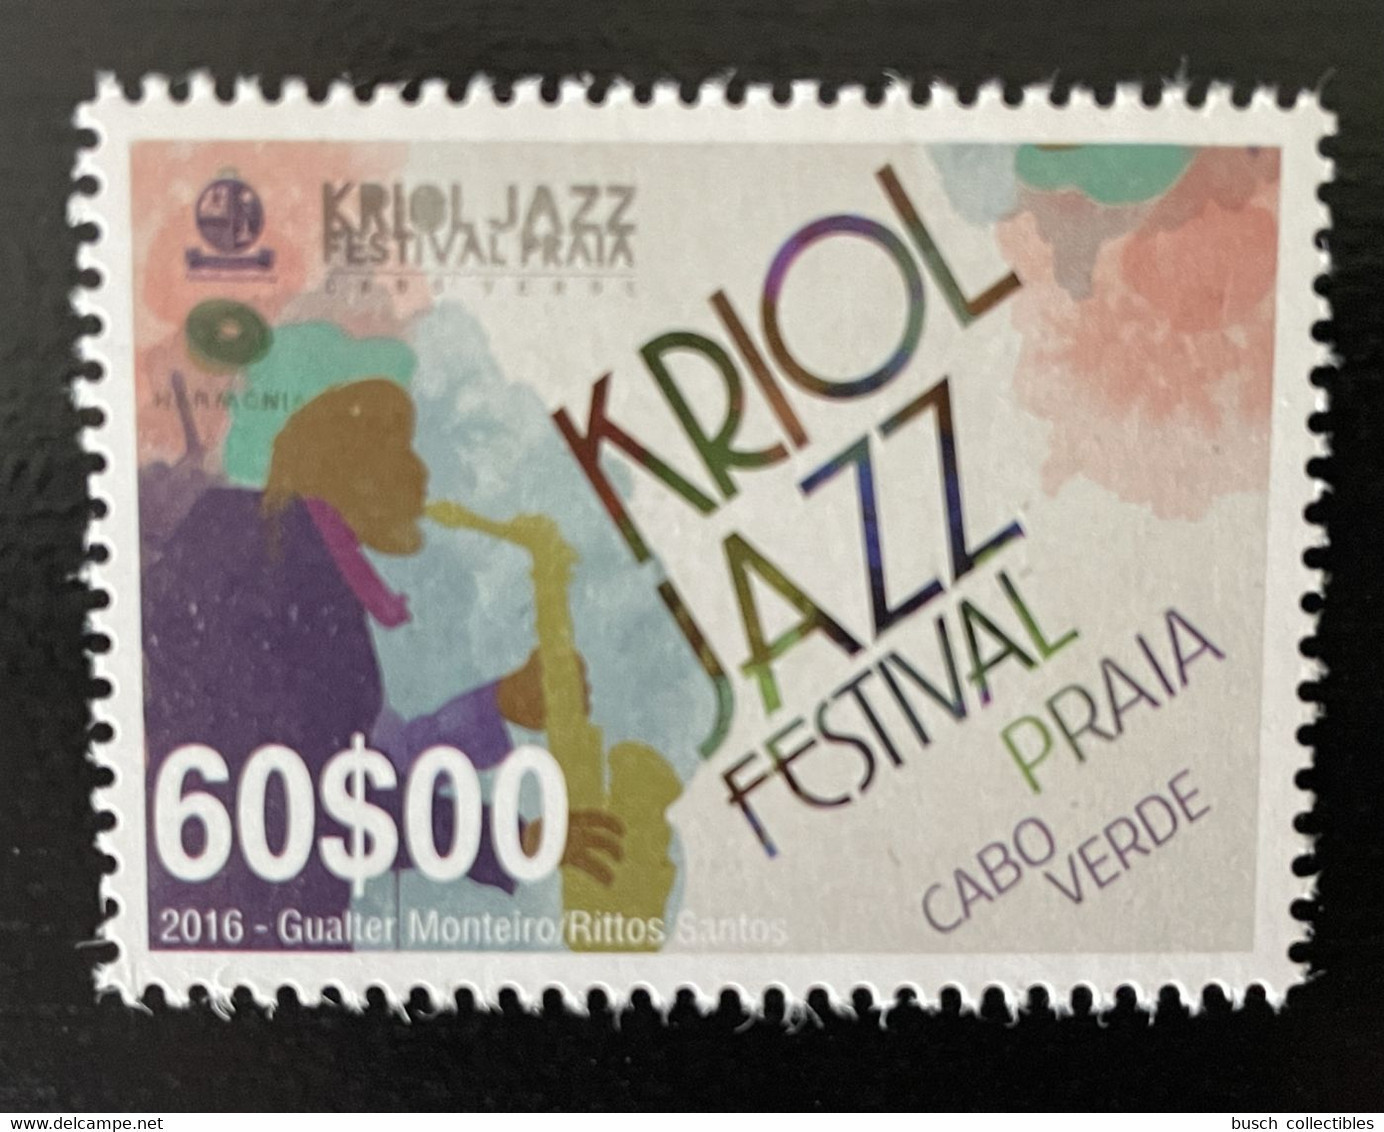 Cape Verde Cabo Verde 2016 Mi. 1039 Kriol Jazz Festival Music Musique Musik - Kap Verde